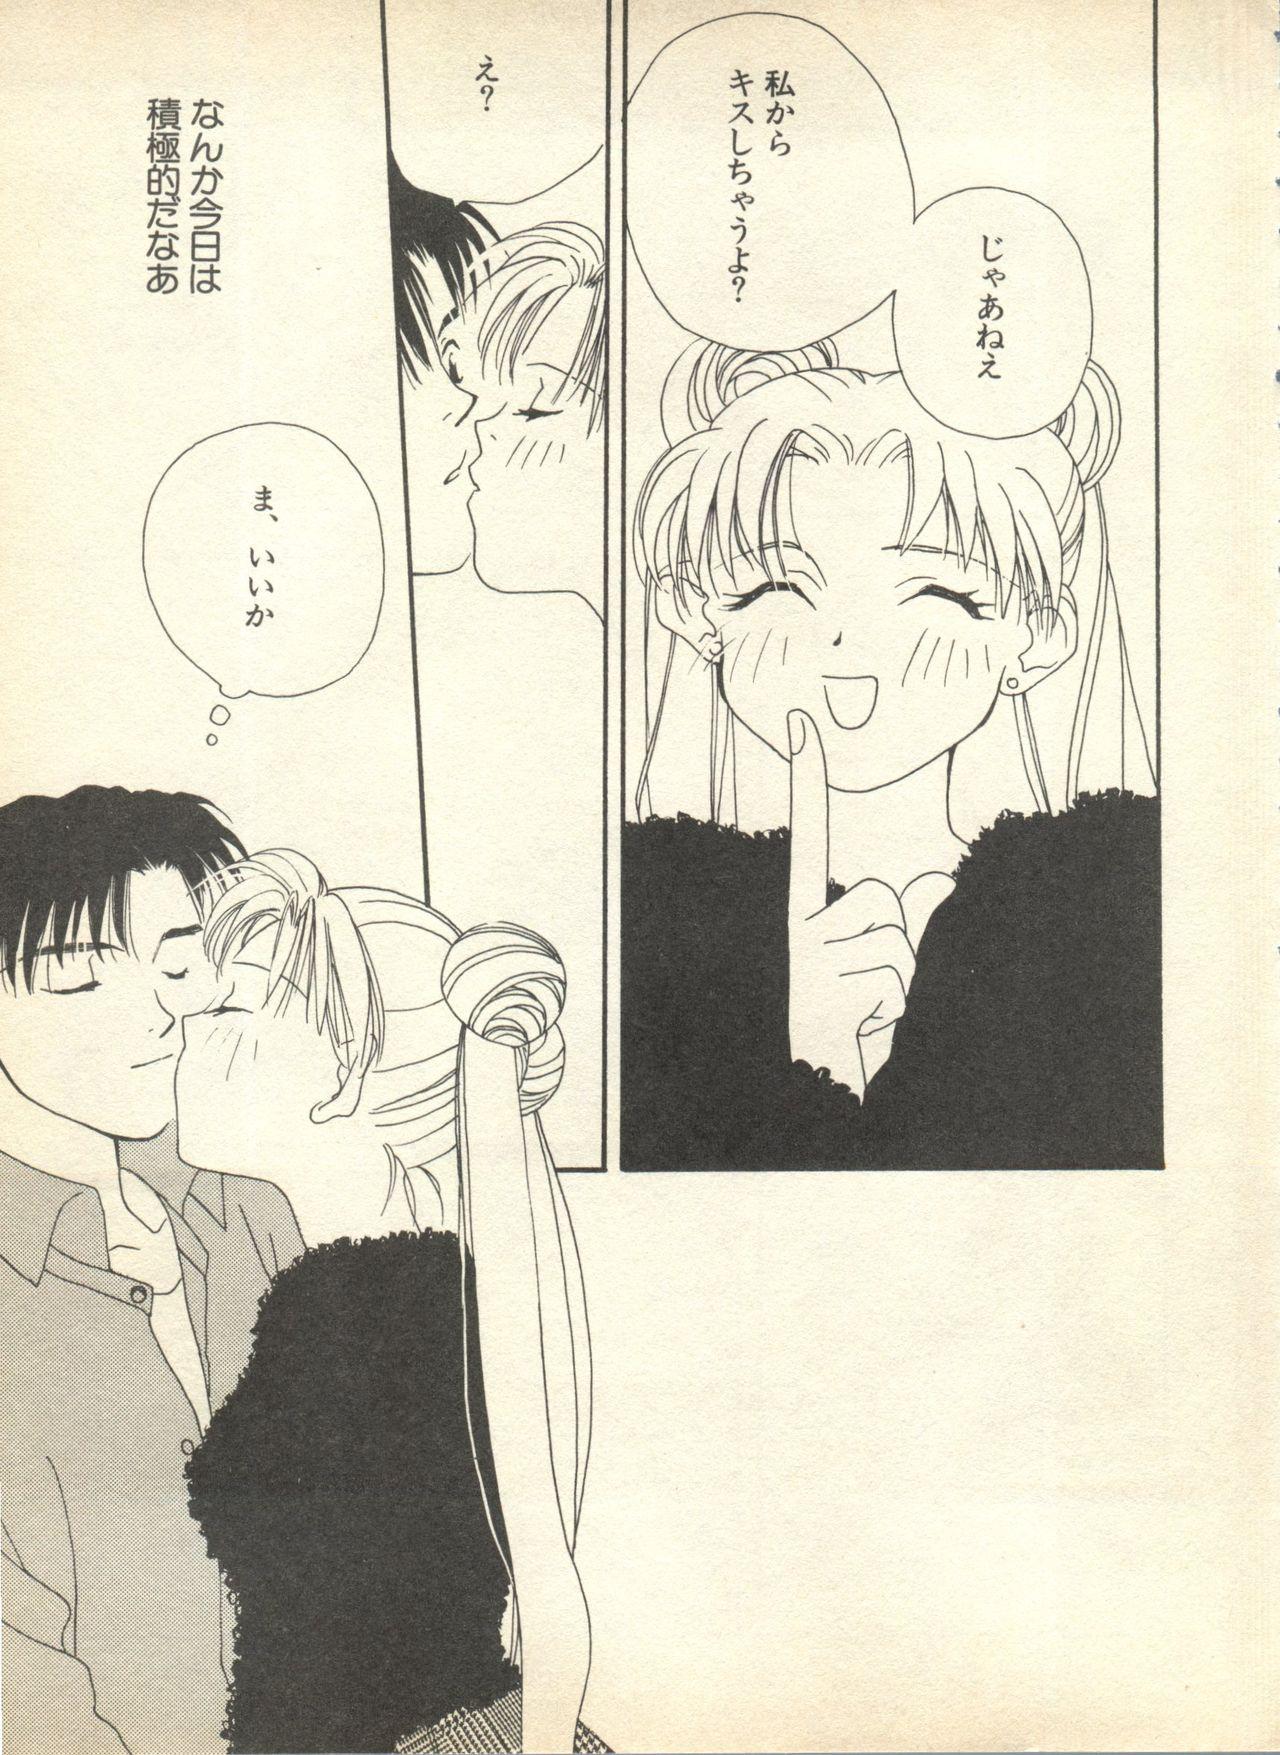 Sfm Lunatic Party 9 - Sailor moon Bigass - Page 6